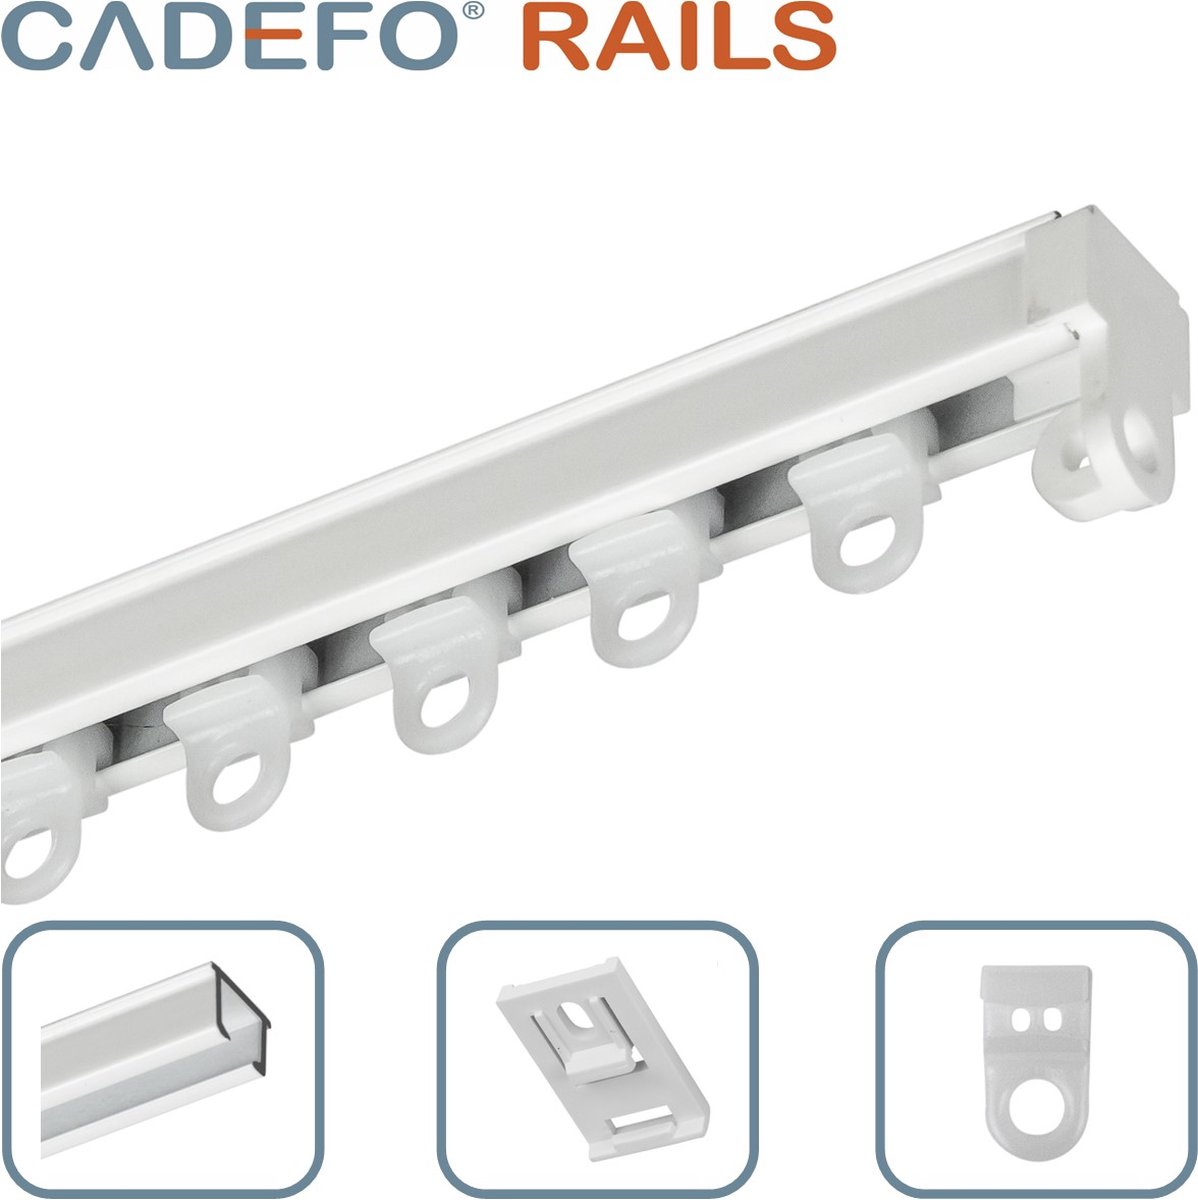 CADEFO RAILS (501 - 550 cm) Gordijnrails - Compleet op maat! - UIT 1 STUK - Leverbaar tot 6 meter - Plafondbevestiging - Lengte 539 cm